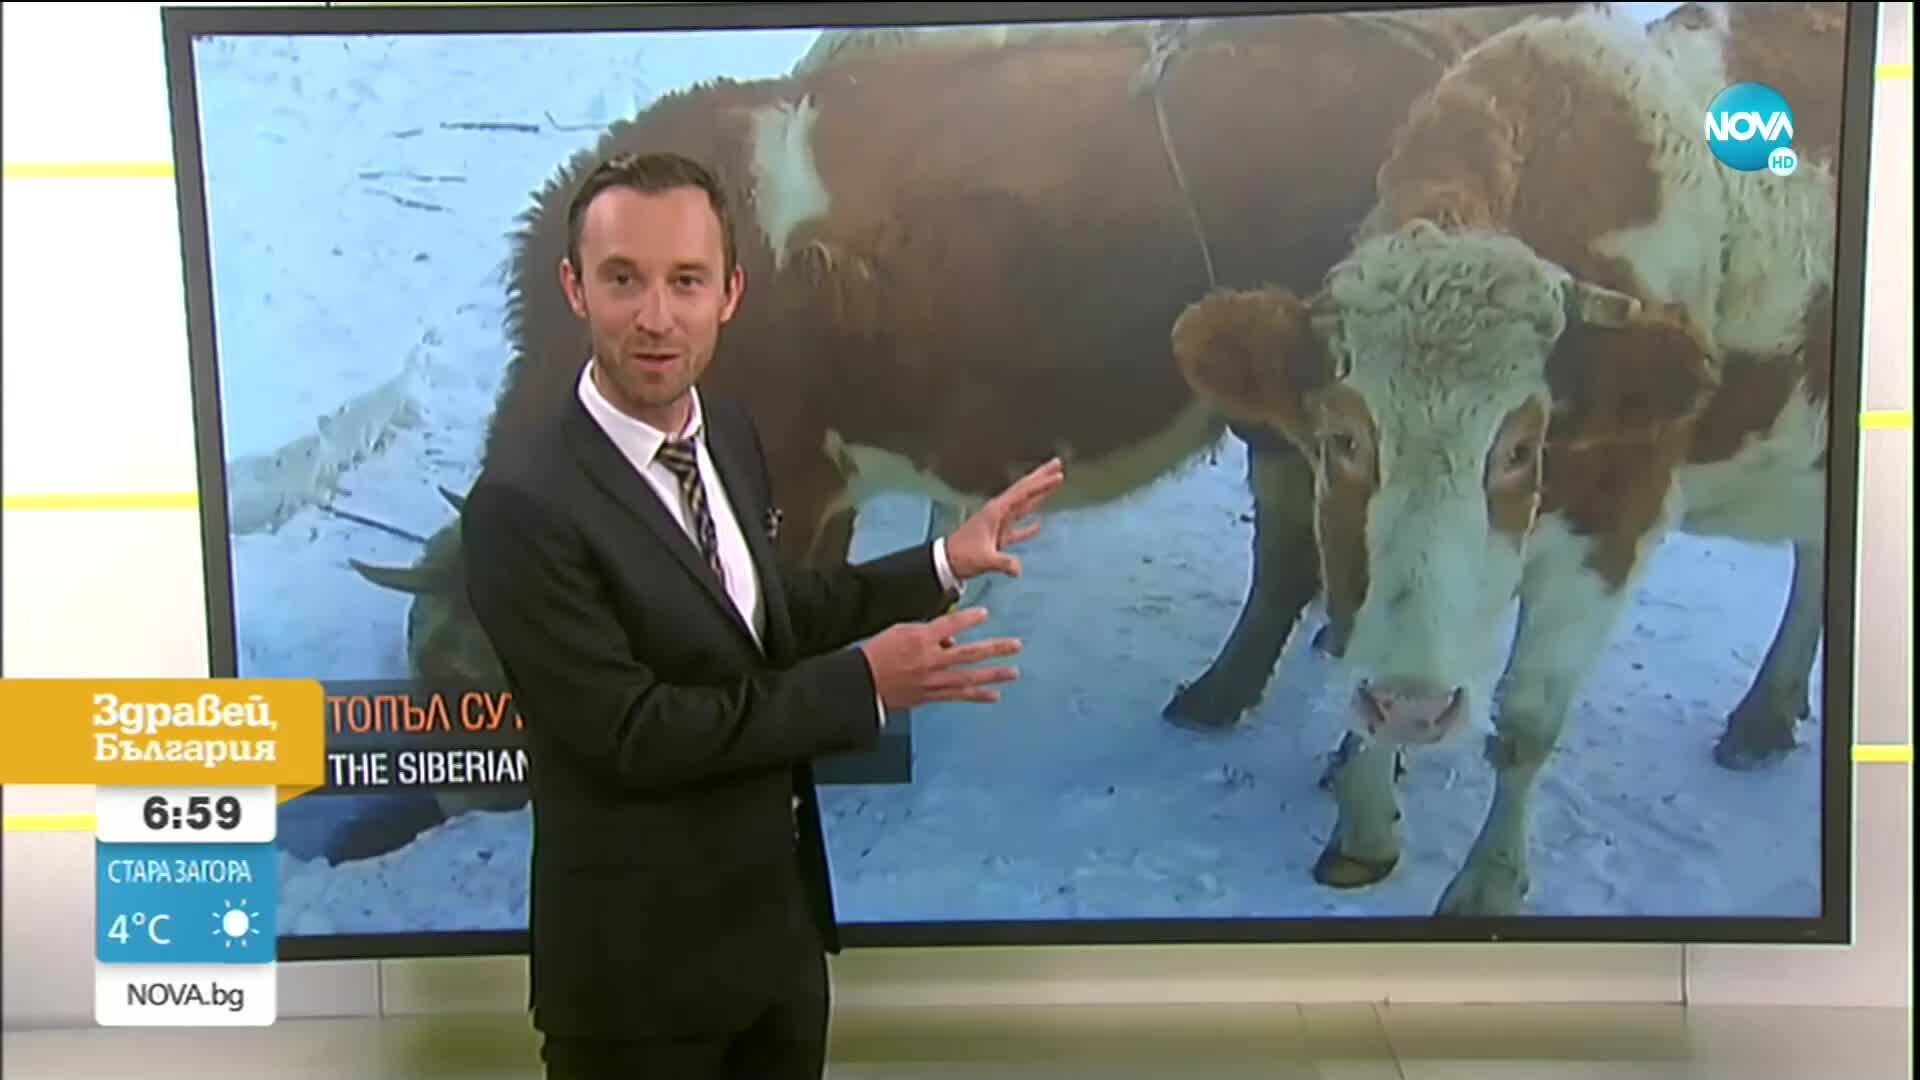 Къде кравите носят сутиени?